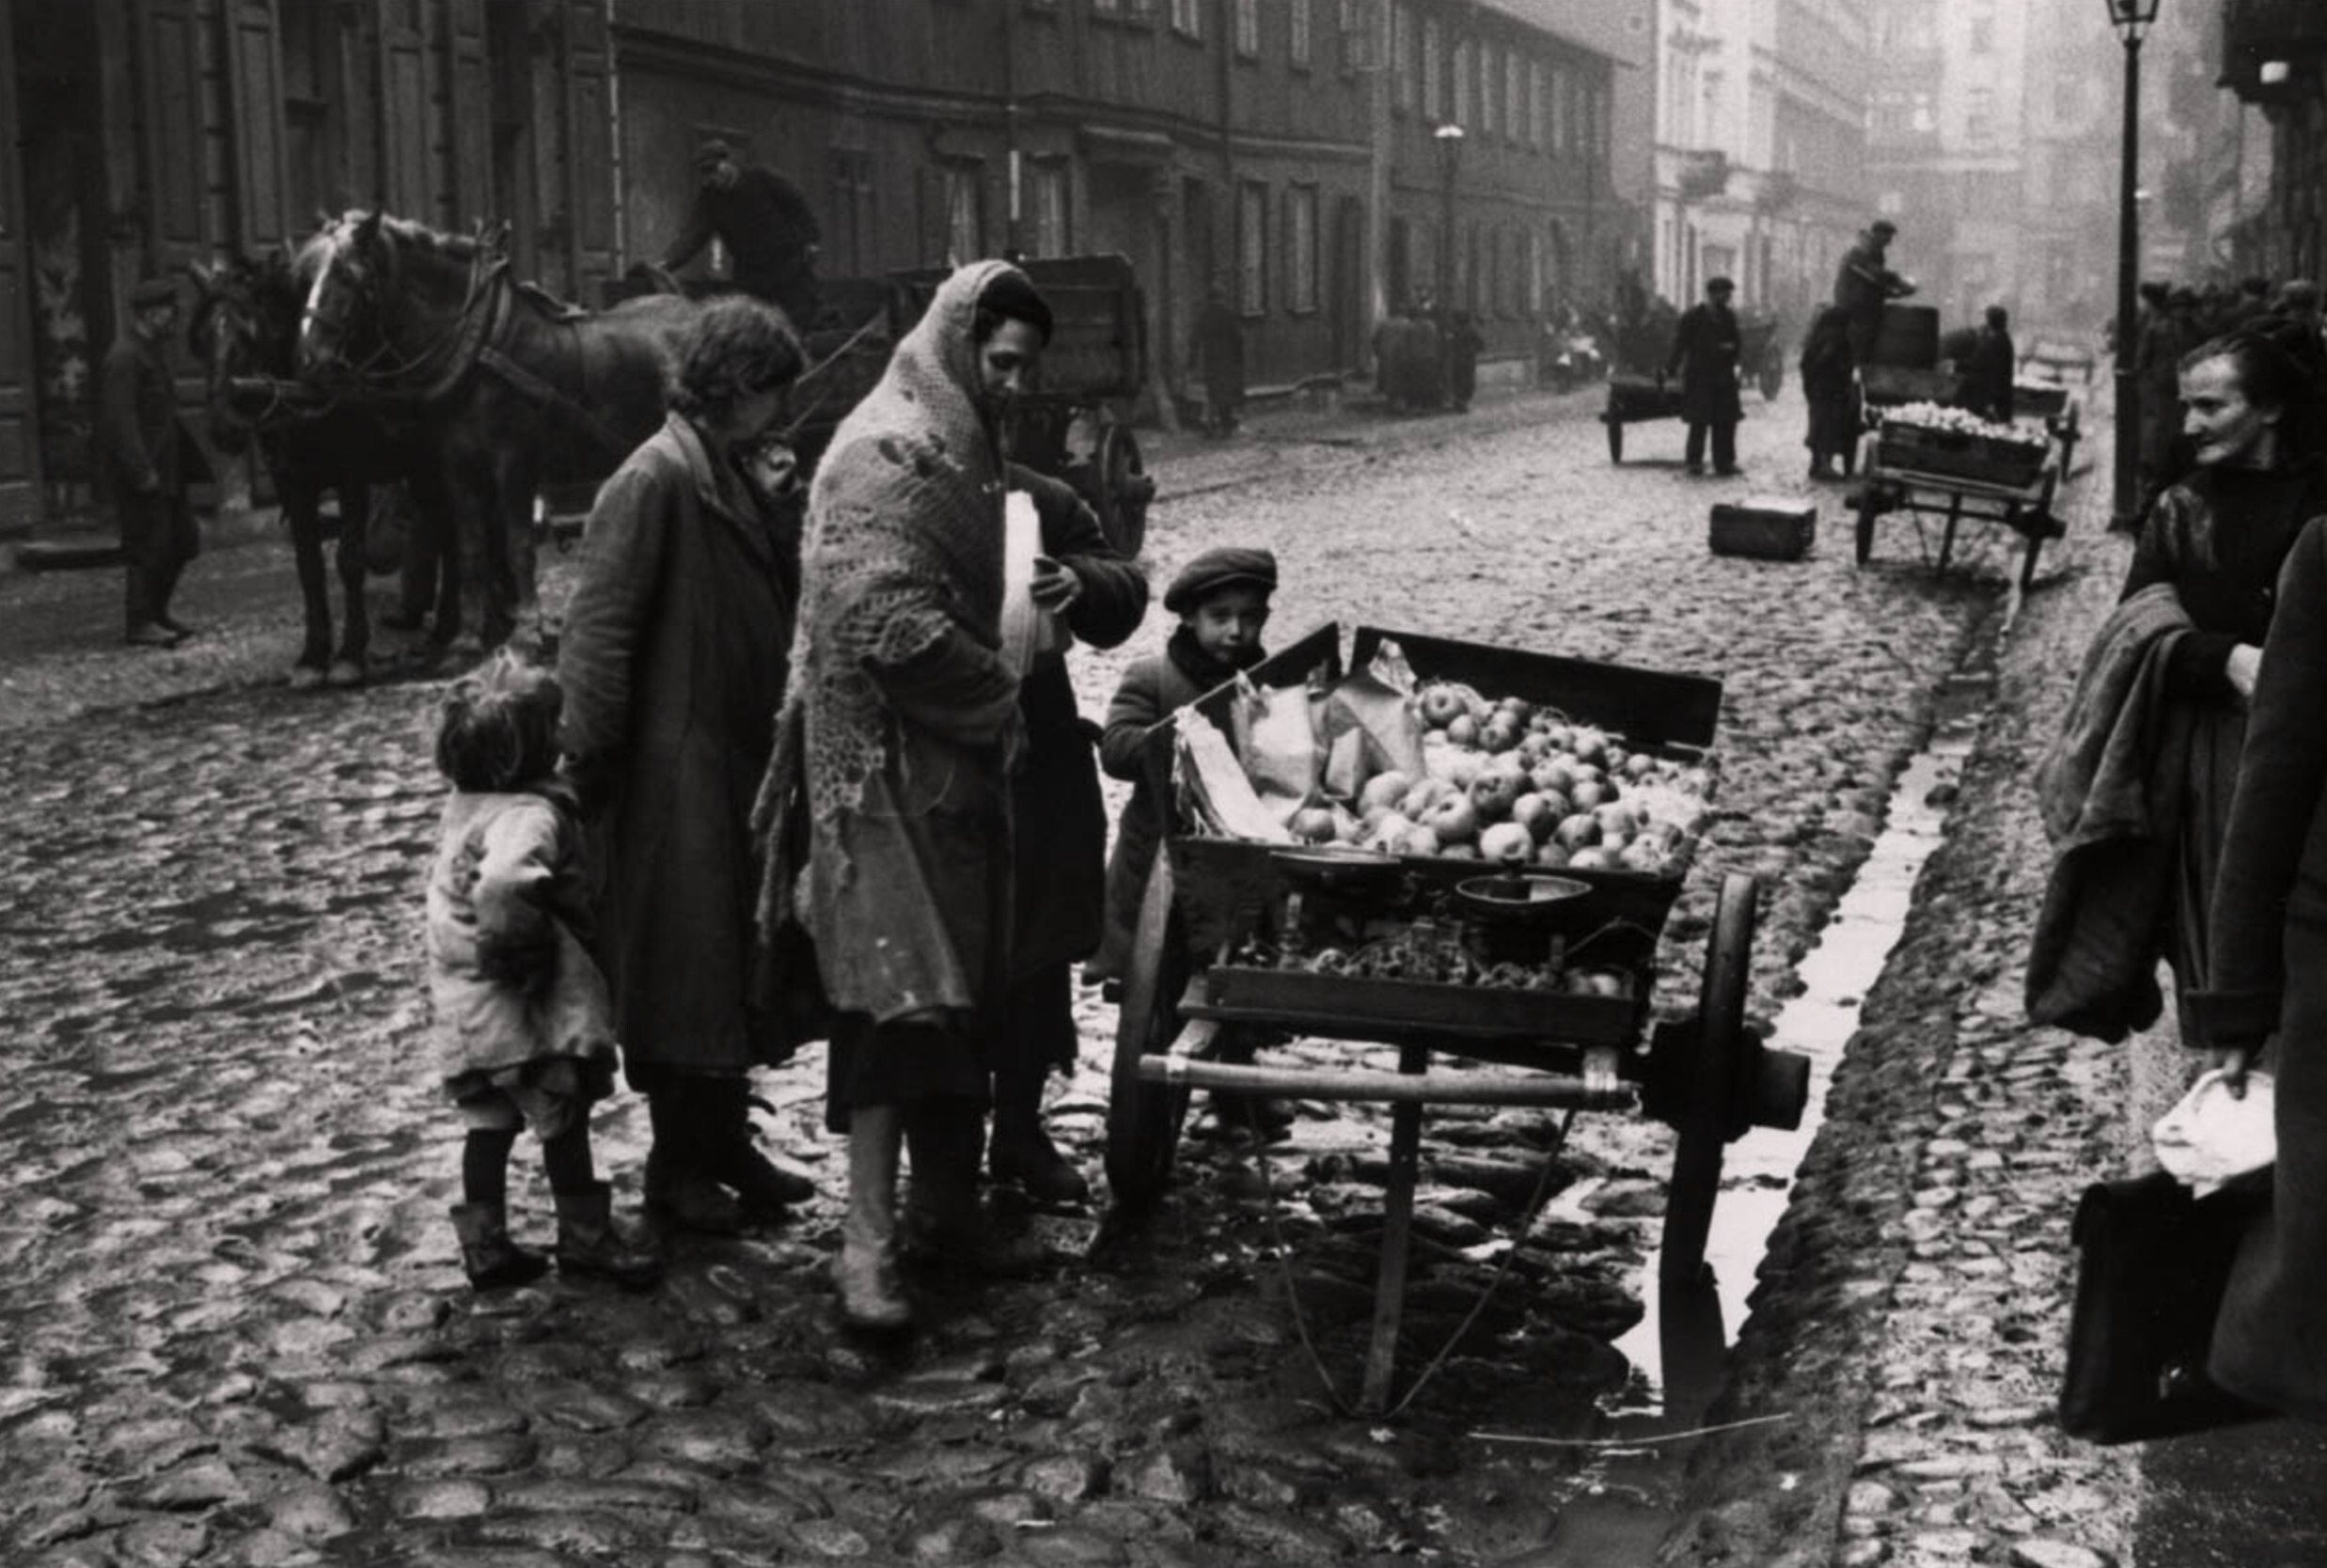 Продавец яблок на улице Геся, ок. 1935-38 гг. Фотограф Роман Вишняк